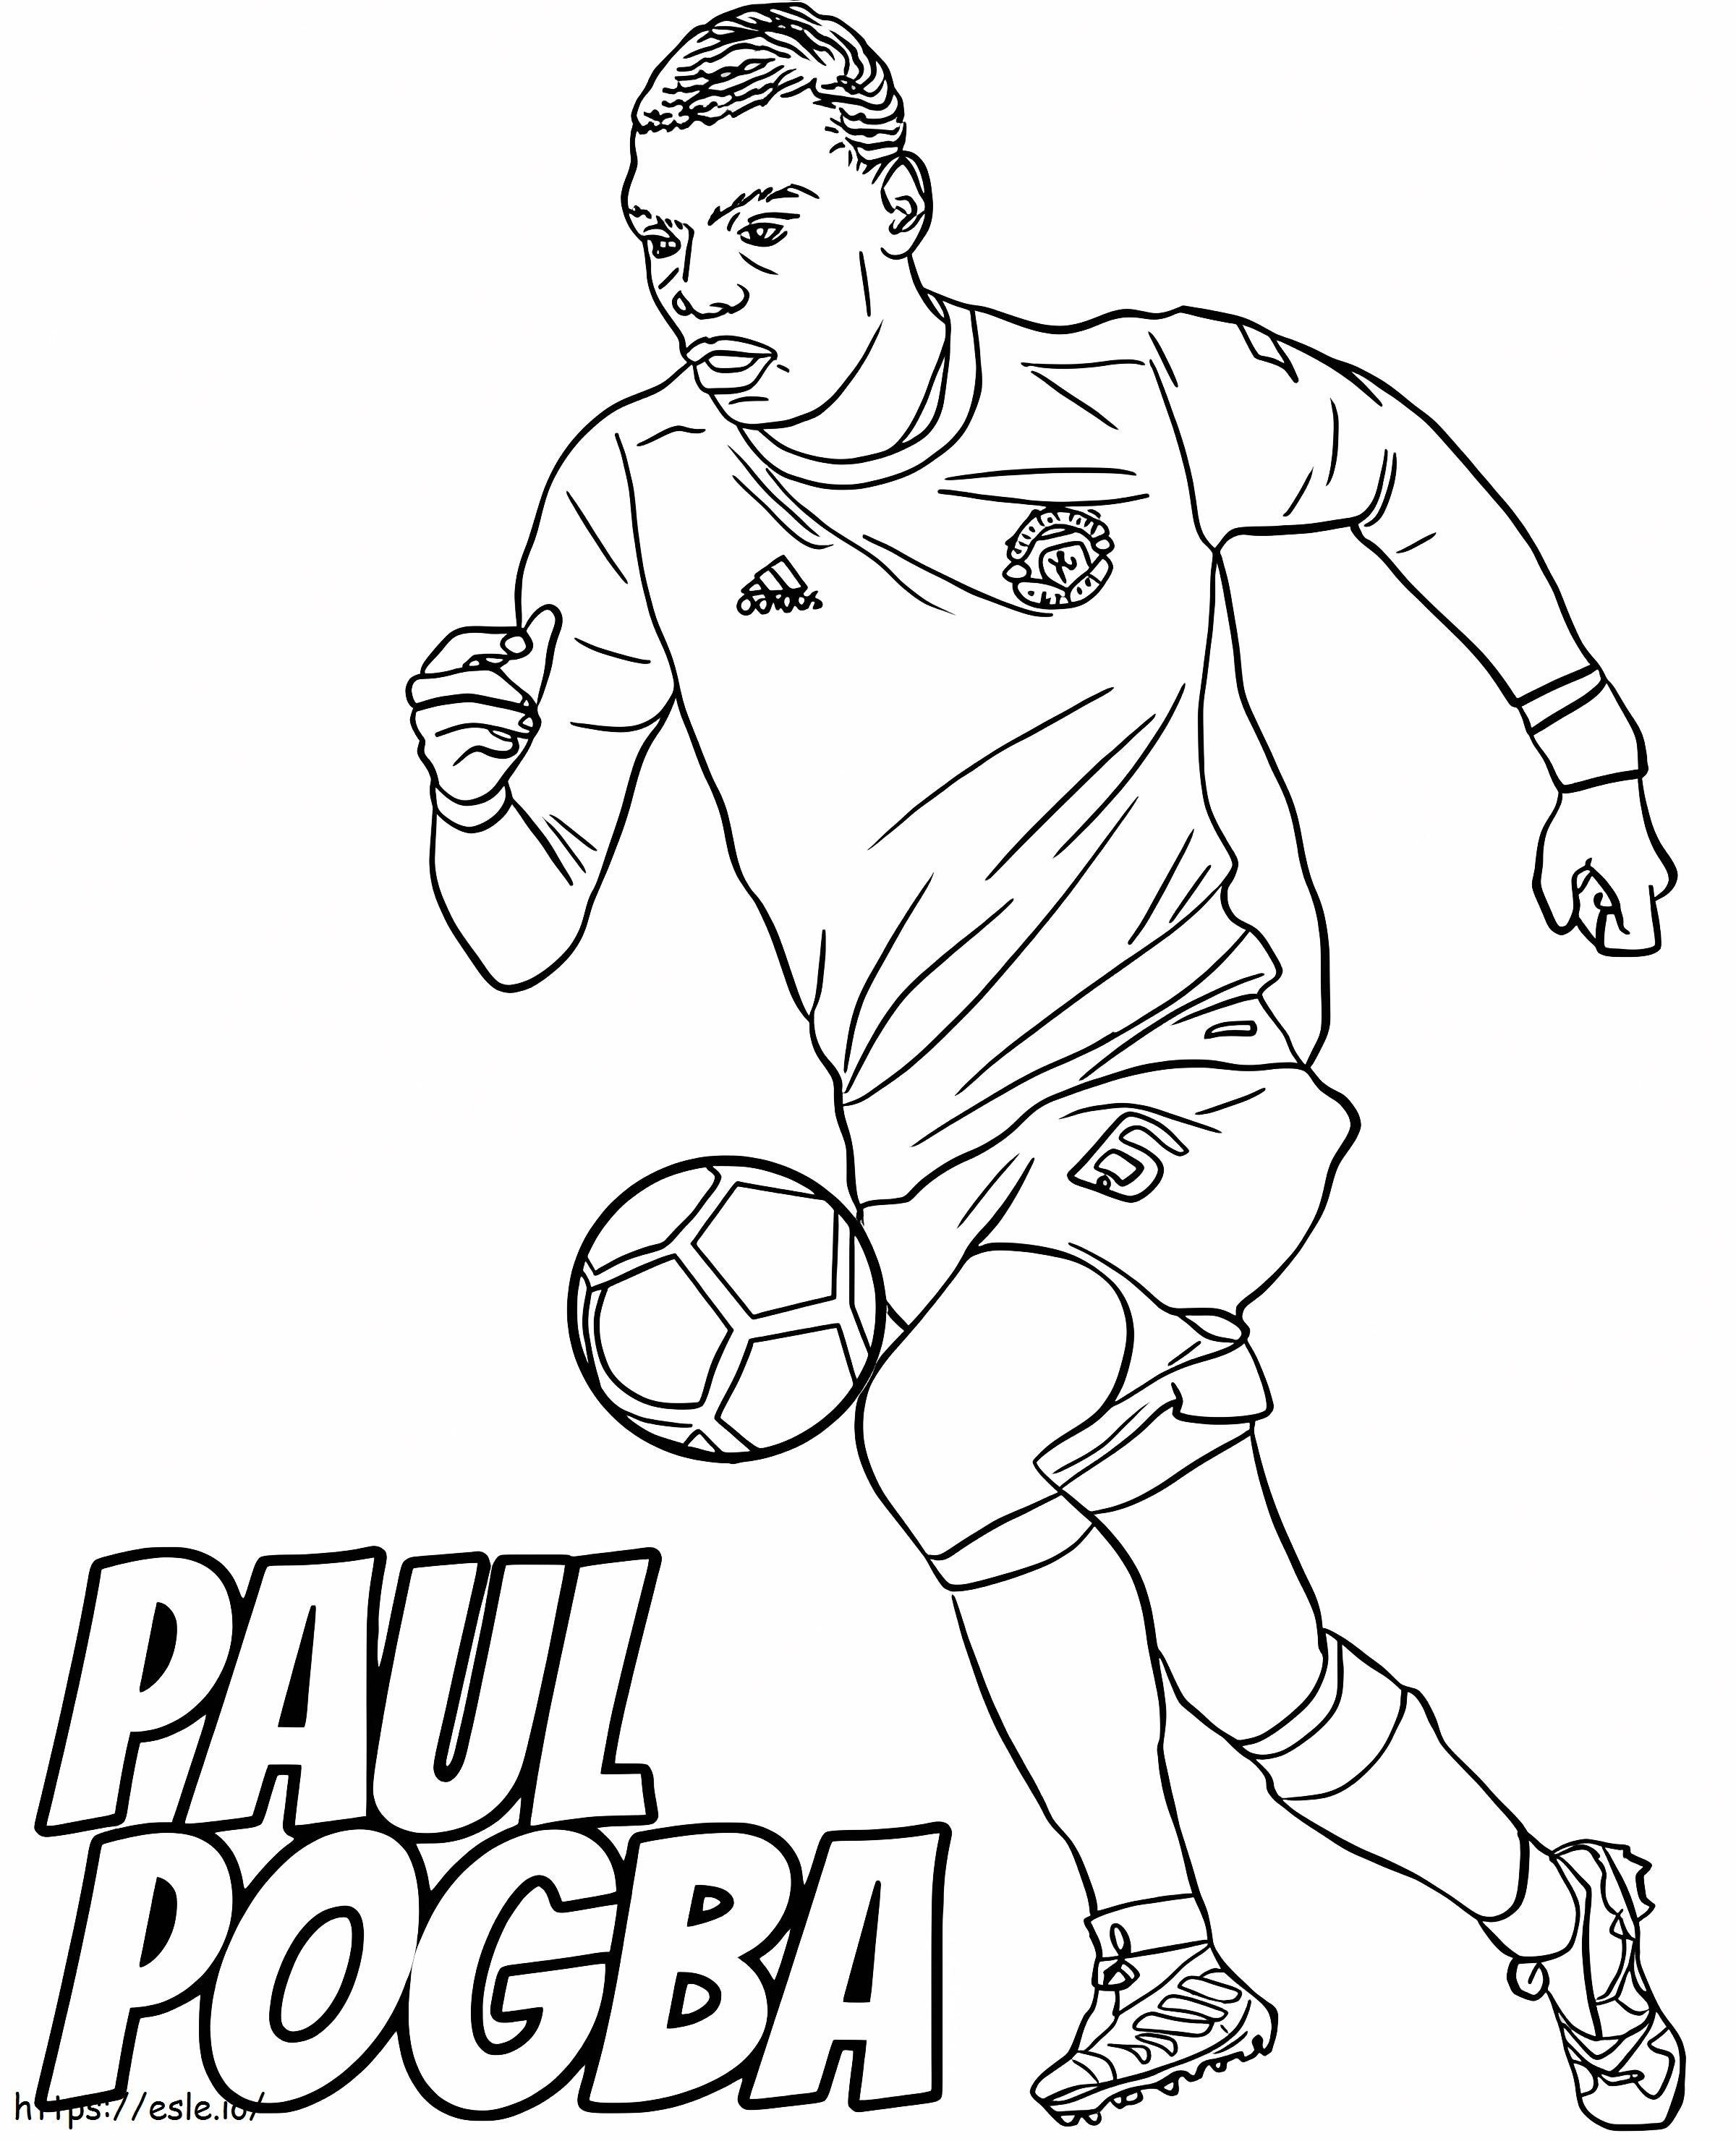 Paul Pogba stuitert de bal kleurplaat kleurplaat